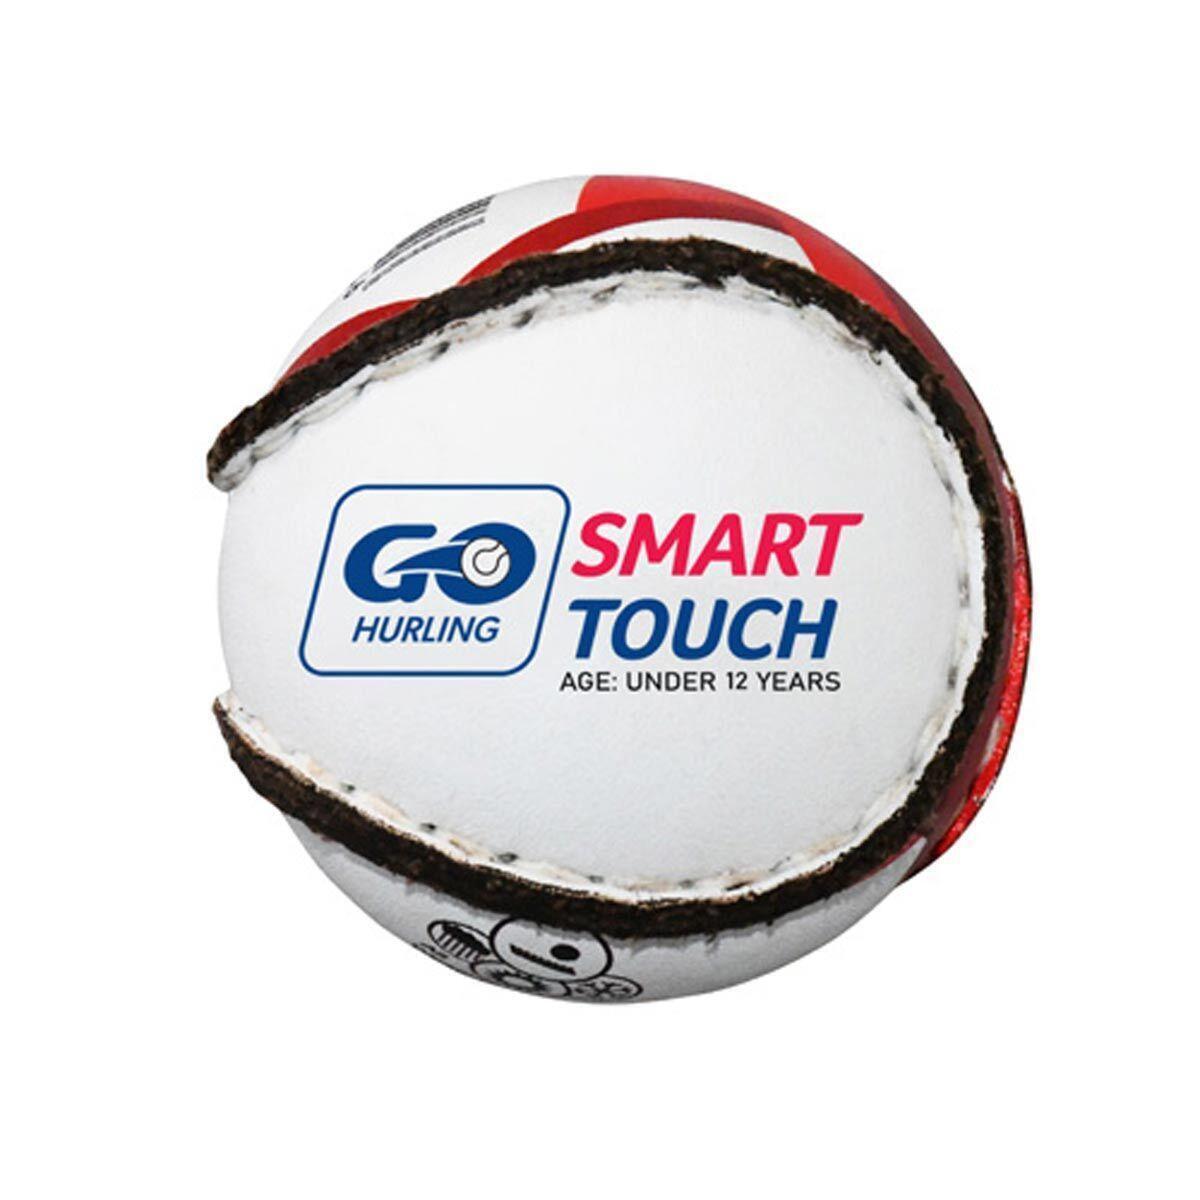 Smart Touch Hurling Sliotar Ball (White/Red/Black) 1/3